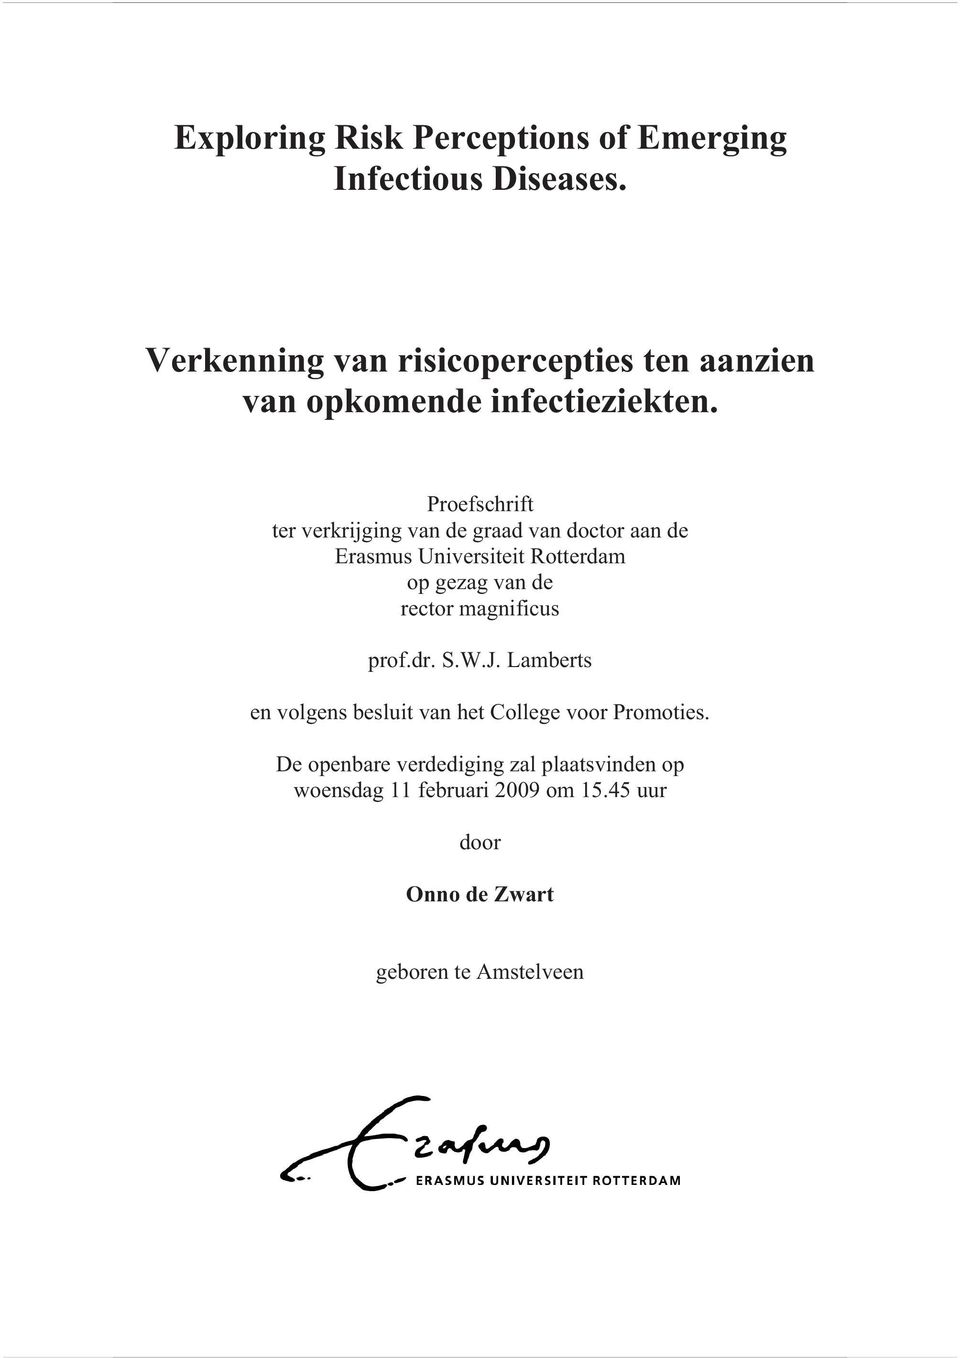 Proefschrift ter verkrijging van de graad van doctor aan de Erasmus Universiteit Rotterdam op gezag van de rector